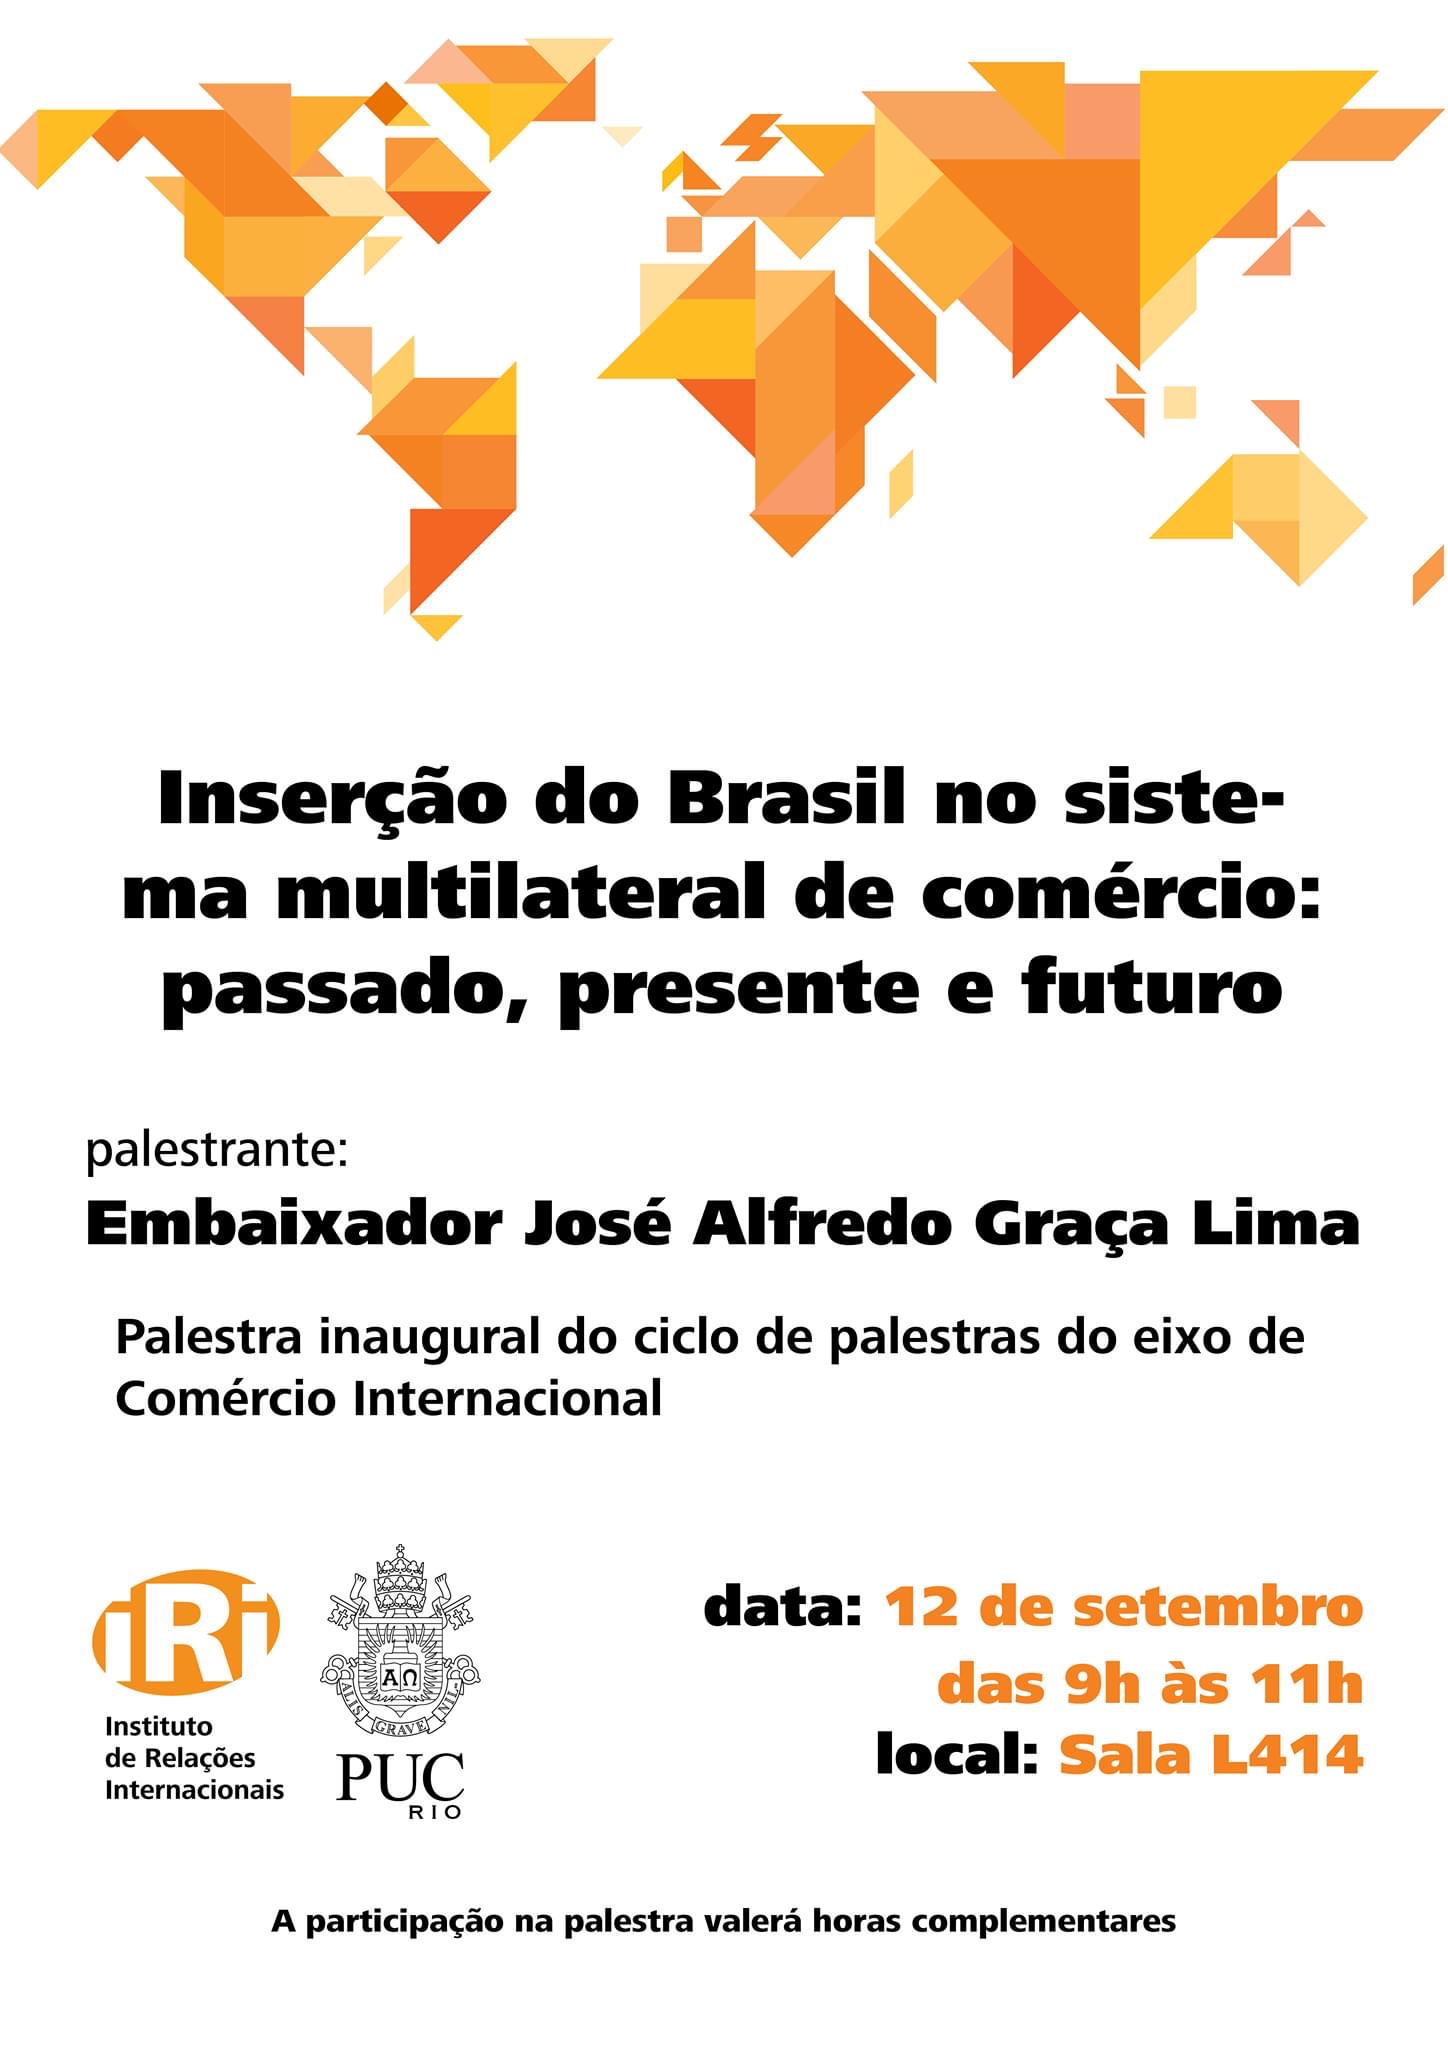 Inserção do Brasil no sistema multilateral de comércio: passado, presente e futuro